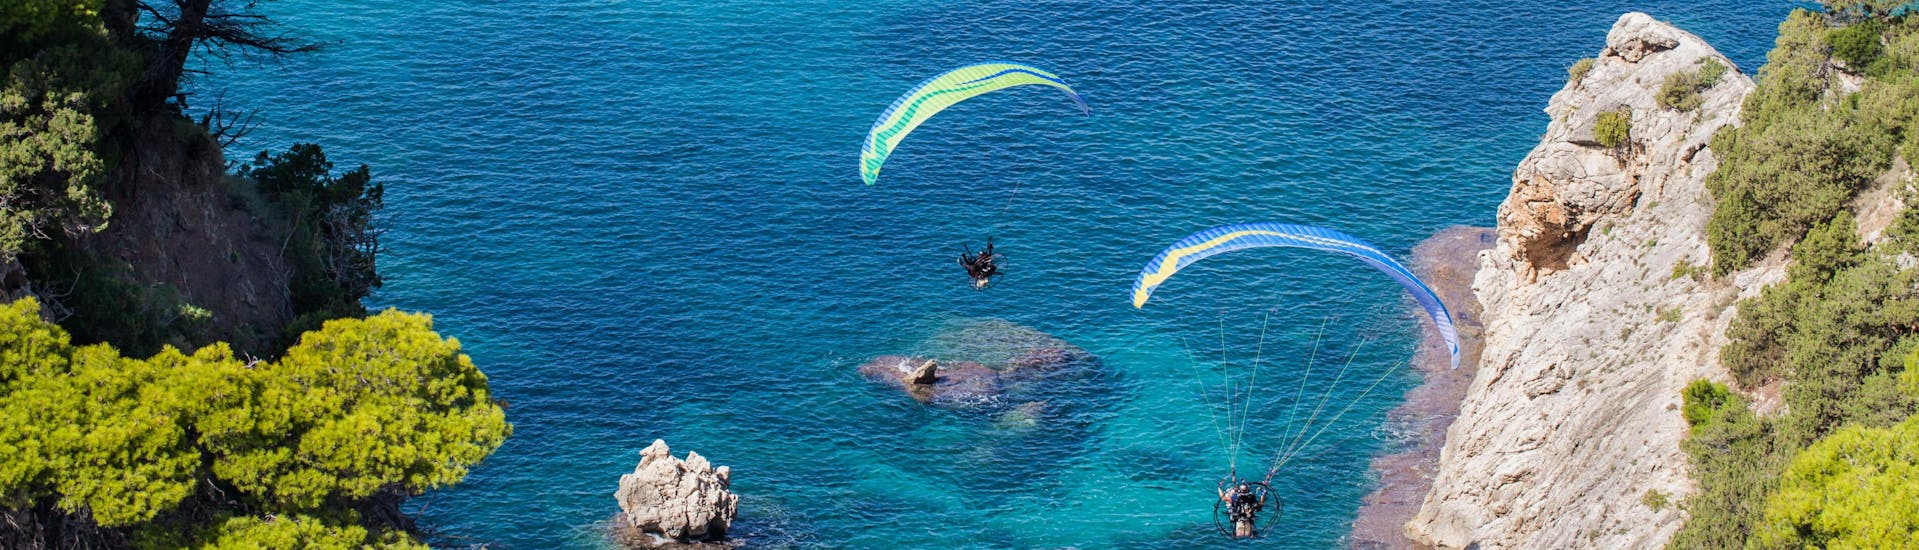 Un entusiasmado participante en un vuelo en parapente biplaza sobrevuela Varipetro, uno de los sitios más populares para volar en parapente.